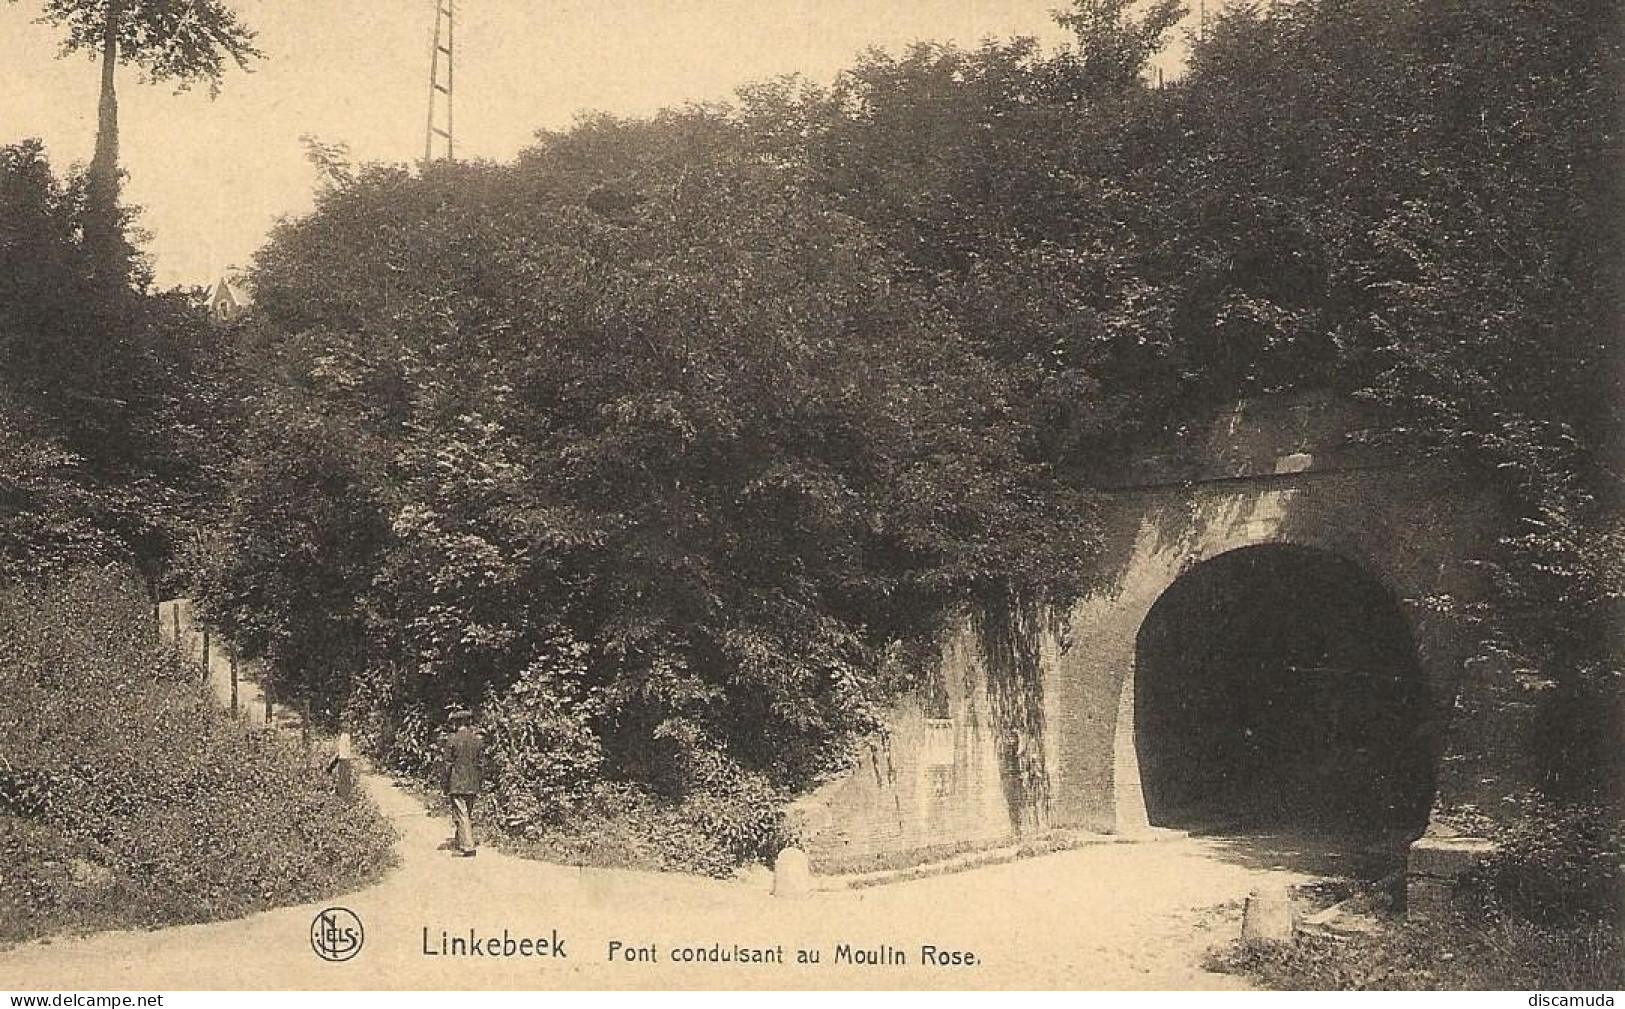 LInkebeek - Linkebeek